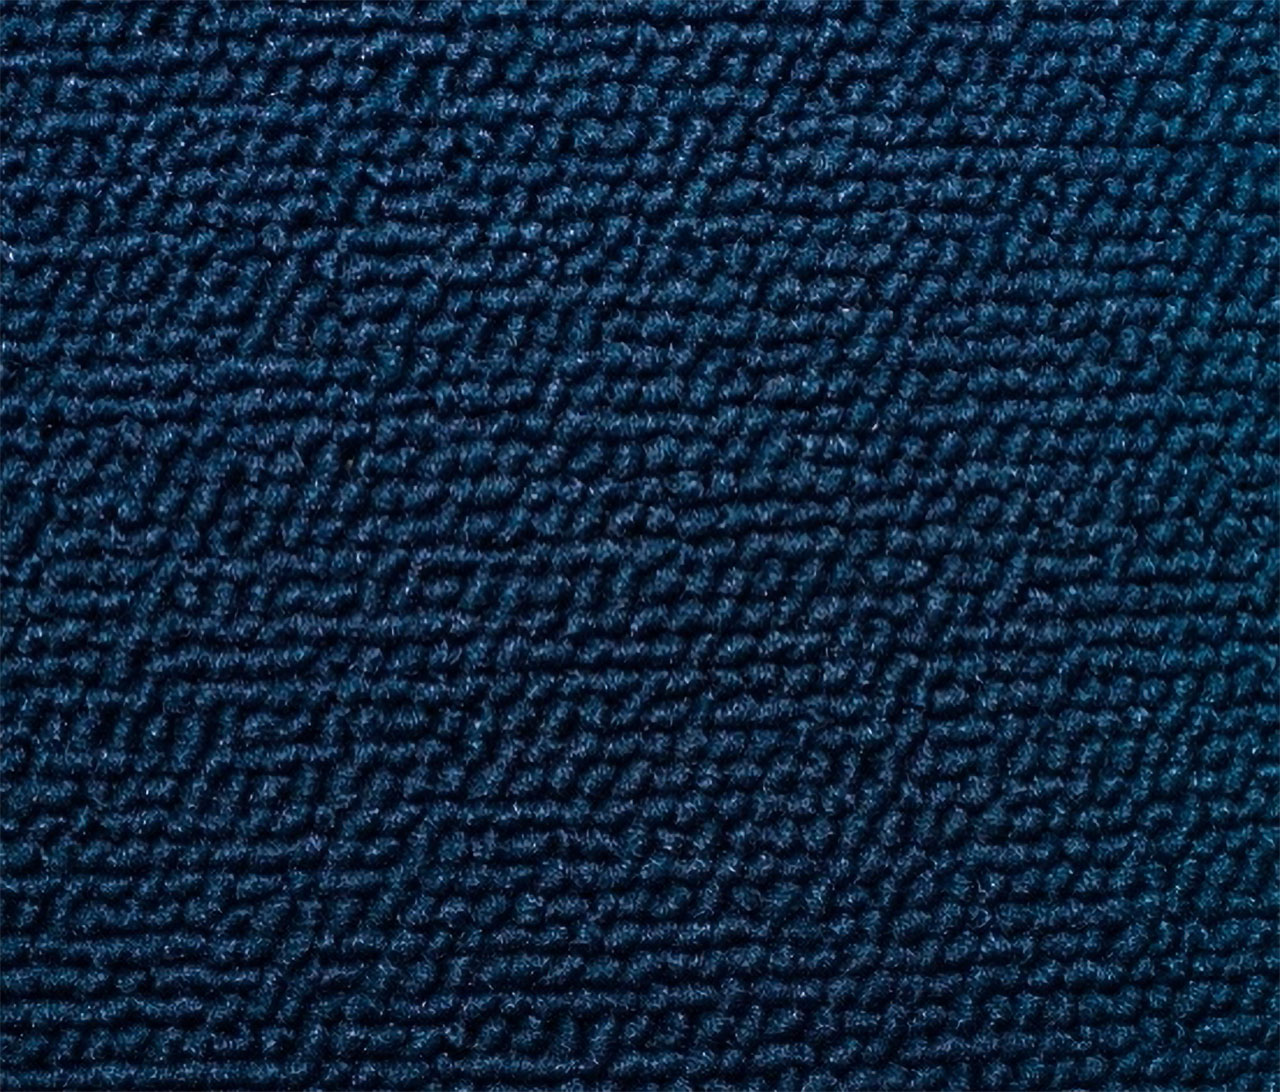 Holden Standard HD Standard Wagon D47 Calais Blue Carpet (Image 1 of 1)